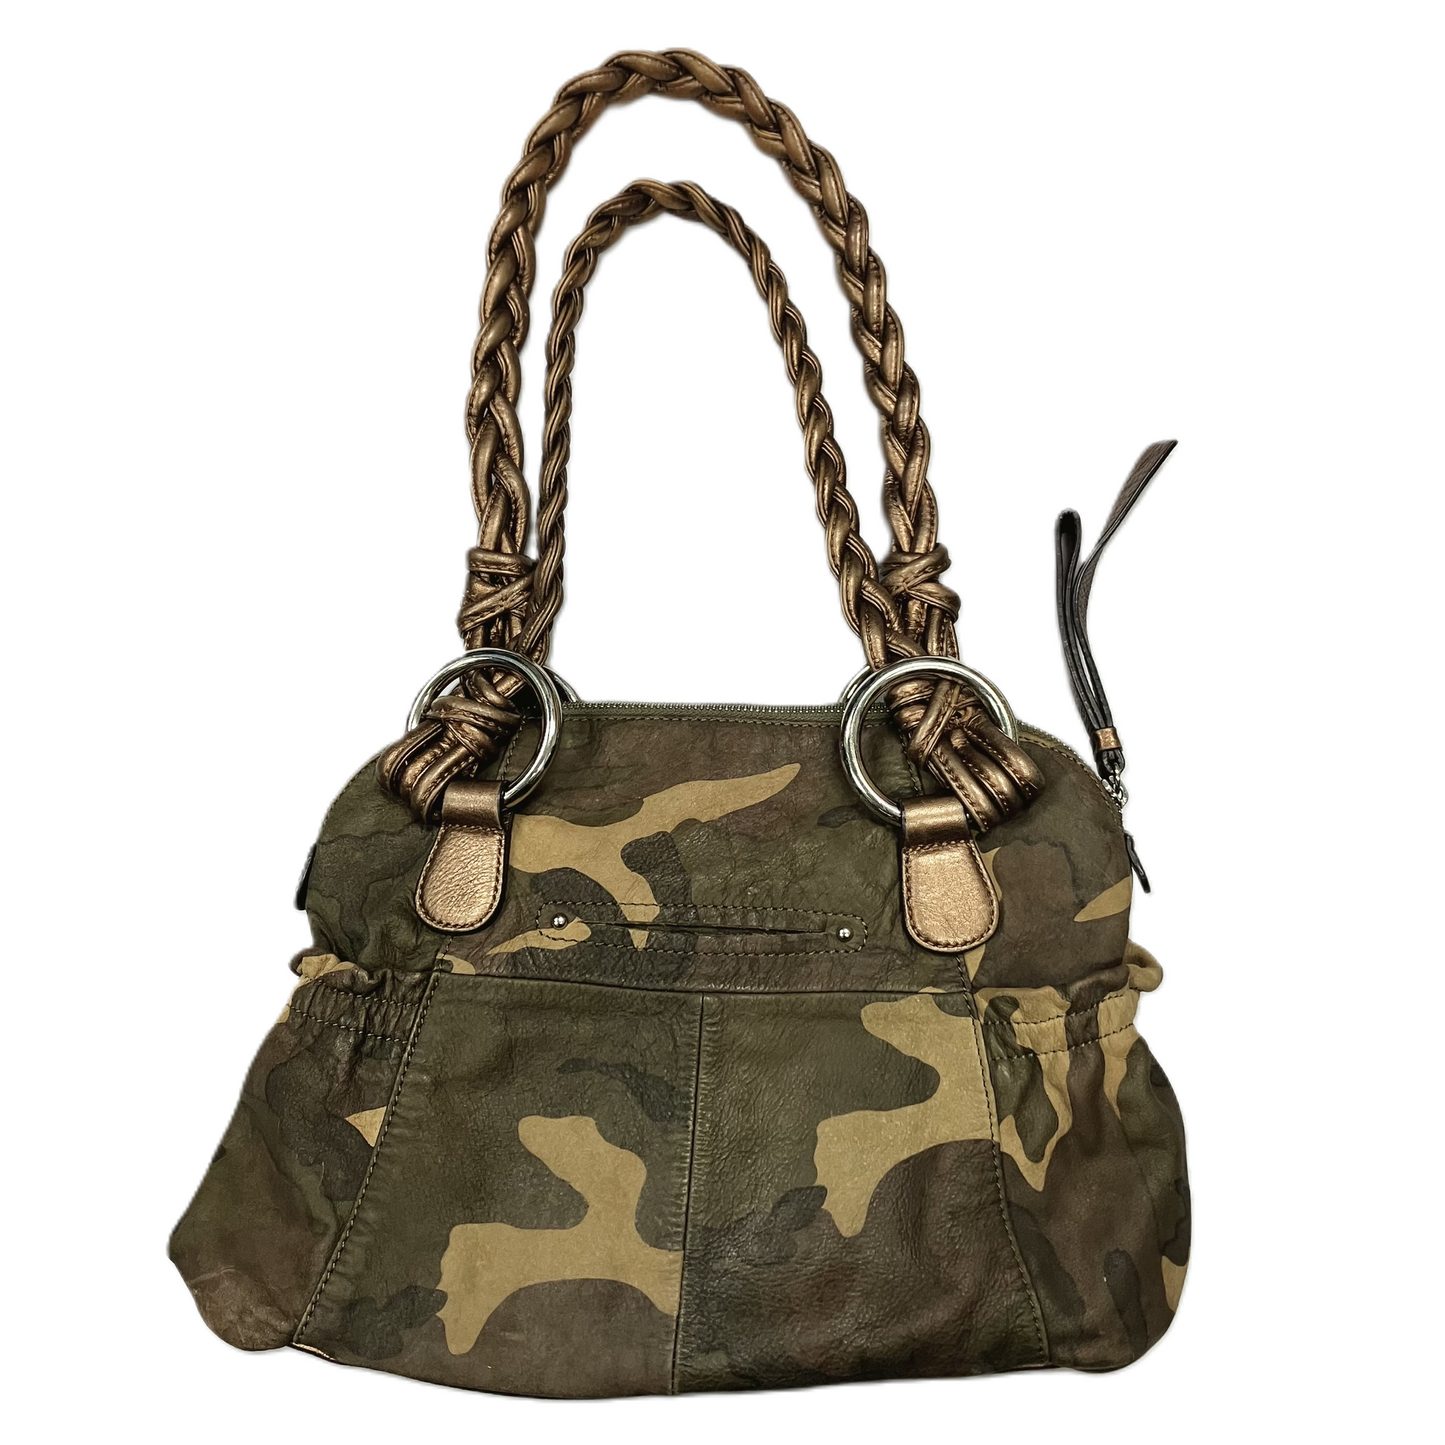 Handbag Designer By B. Makowsky  Size: Medium